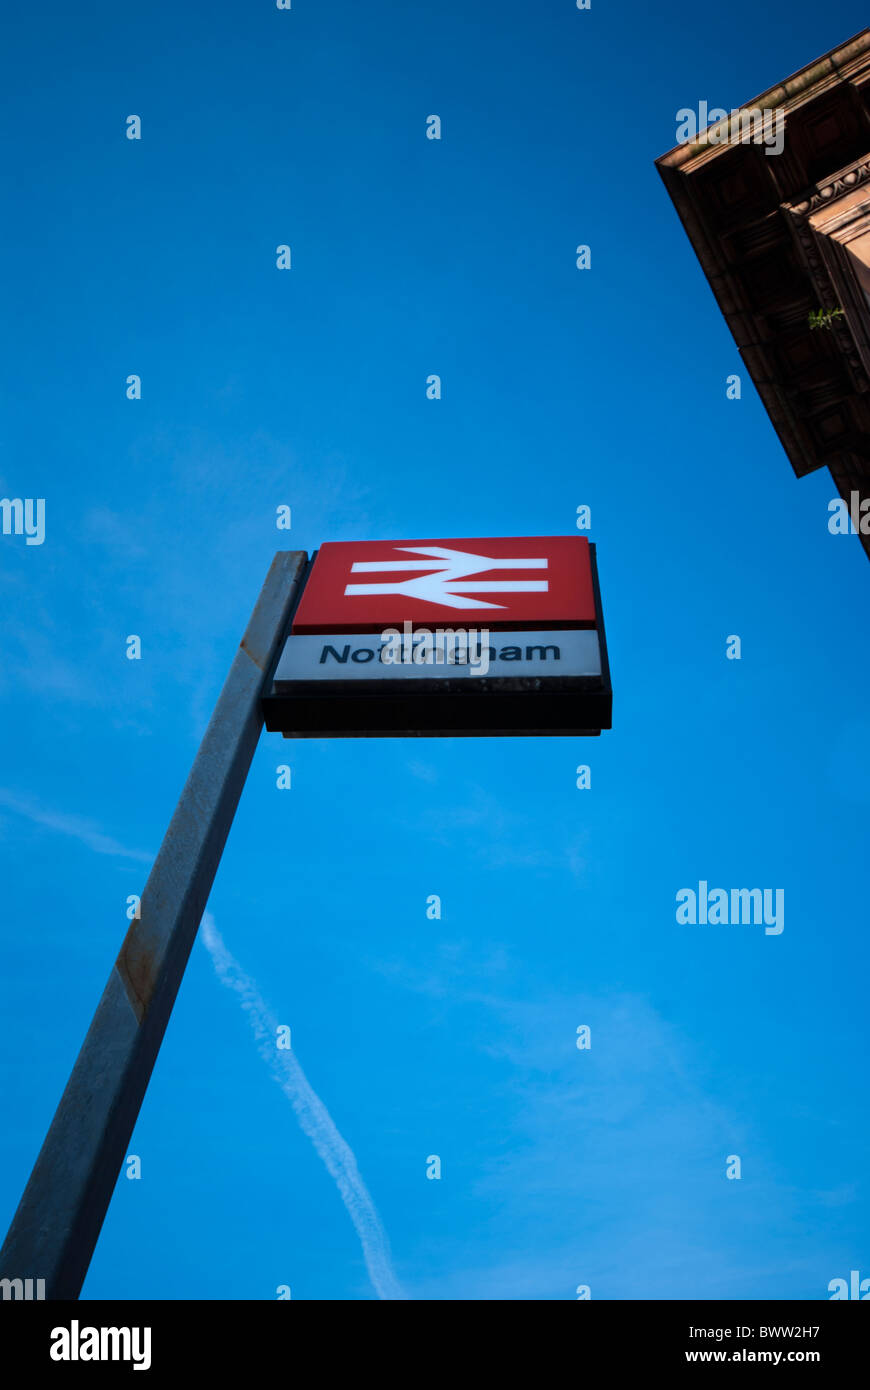 British Rail sign, Nottingham Railway Station, Nottingham, England, UK Stock Photo